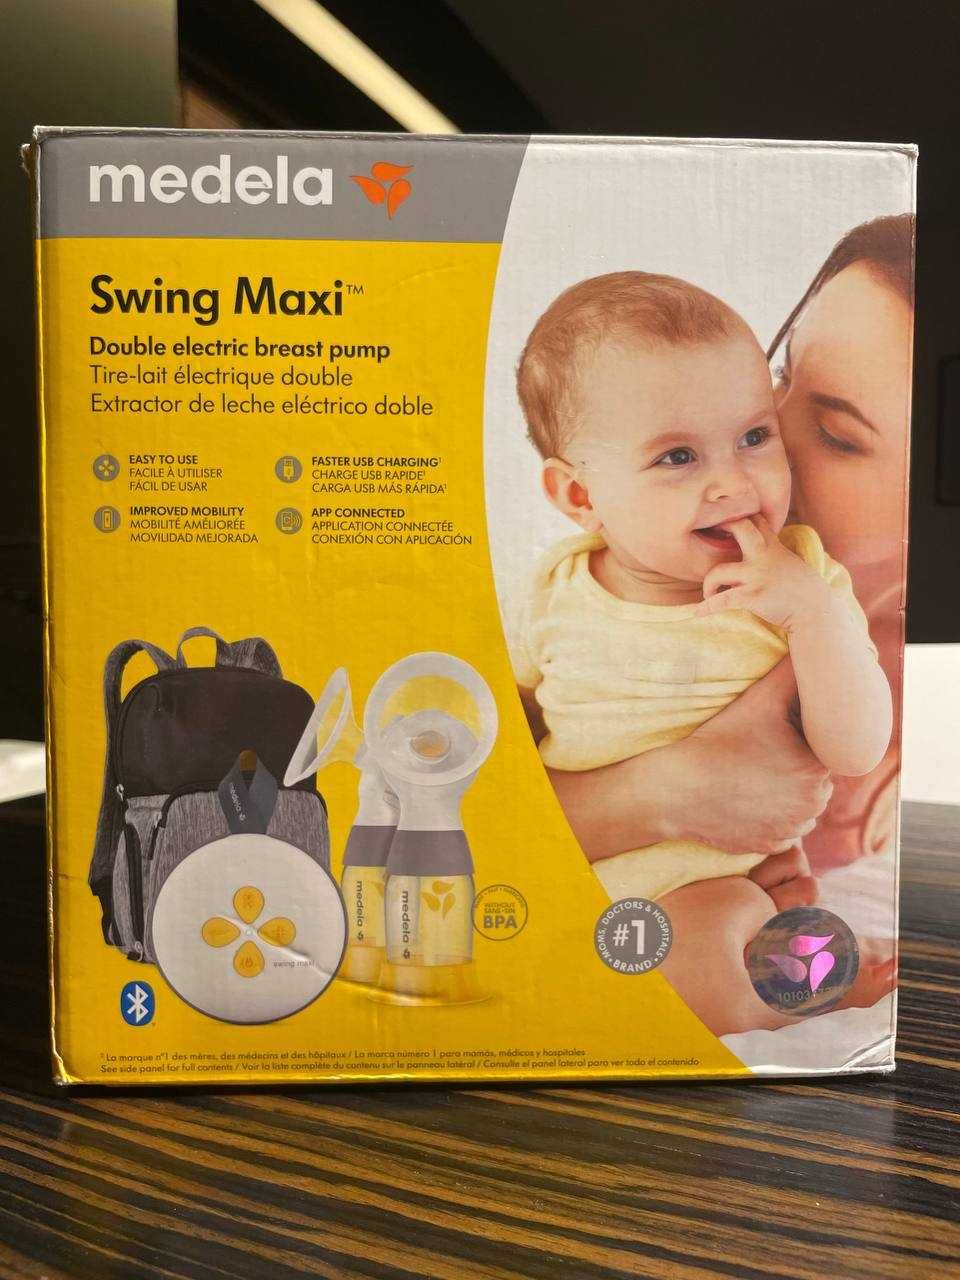 Medela Swing Maxi - Podwójny elektryczny laktator